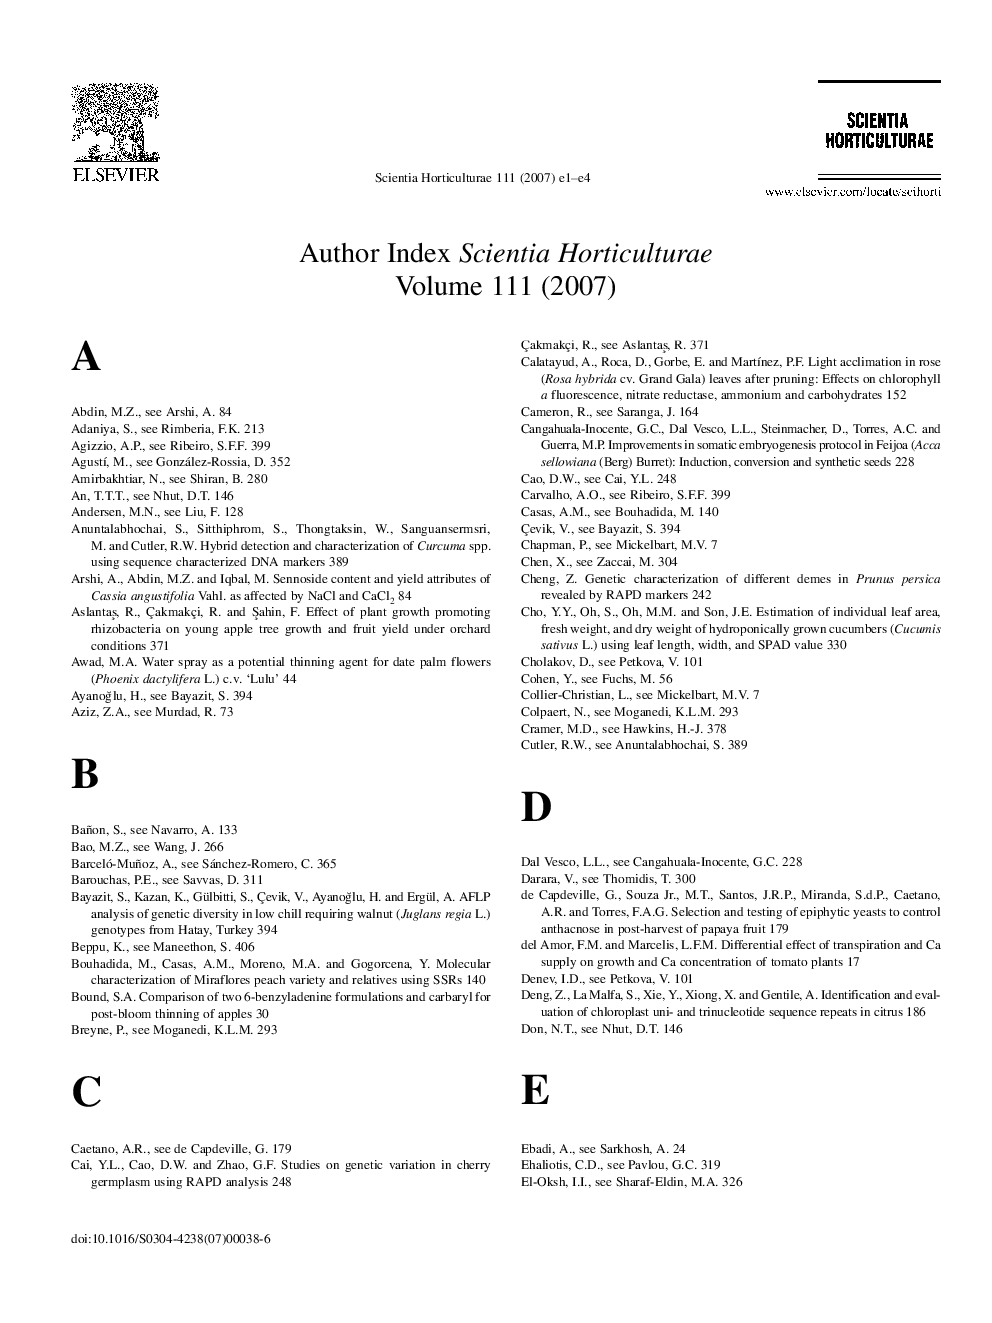 Author Index Scientia Horticulturae Volume 111